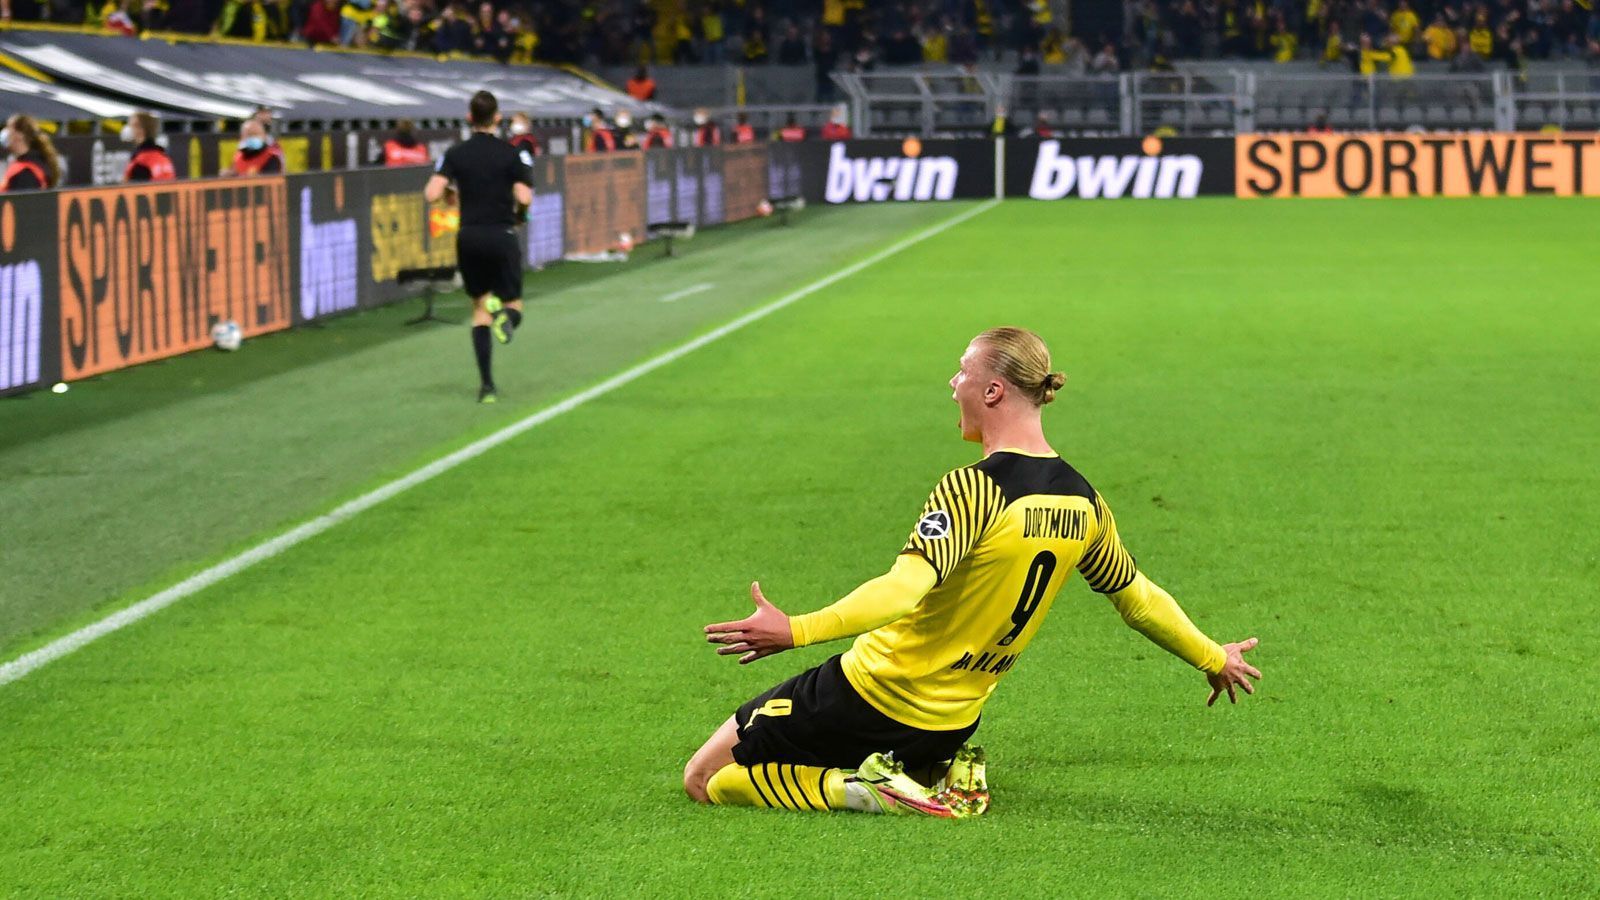 
                <strong>Das Torjägerduell bei Borussia Dortmund gegen TSG Hoffenheim</strong><br>
                Zum Abschluss seines Jubellaufs rutscht der Mann des Abends über den Rasen. Klarer Punktsieger im Duell: Haaland. Widerworte zwecklos.
              